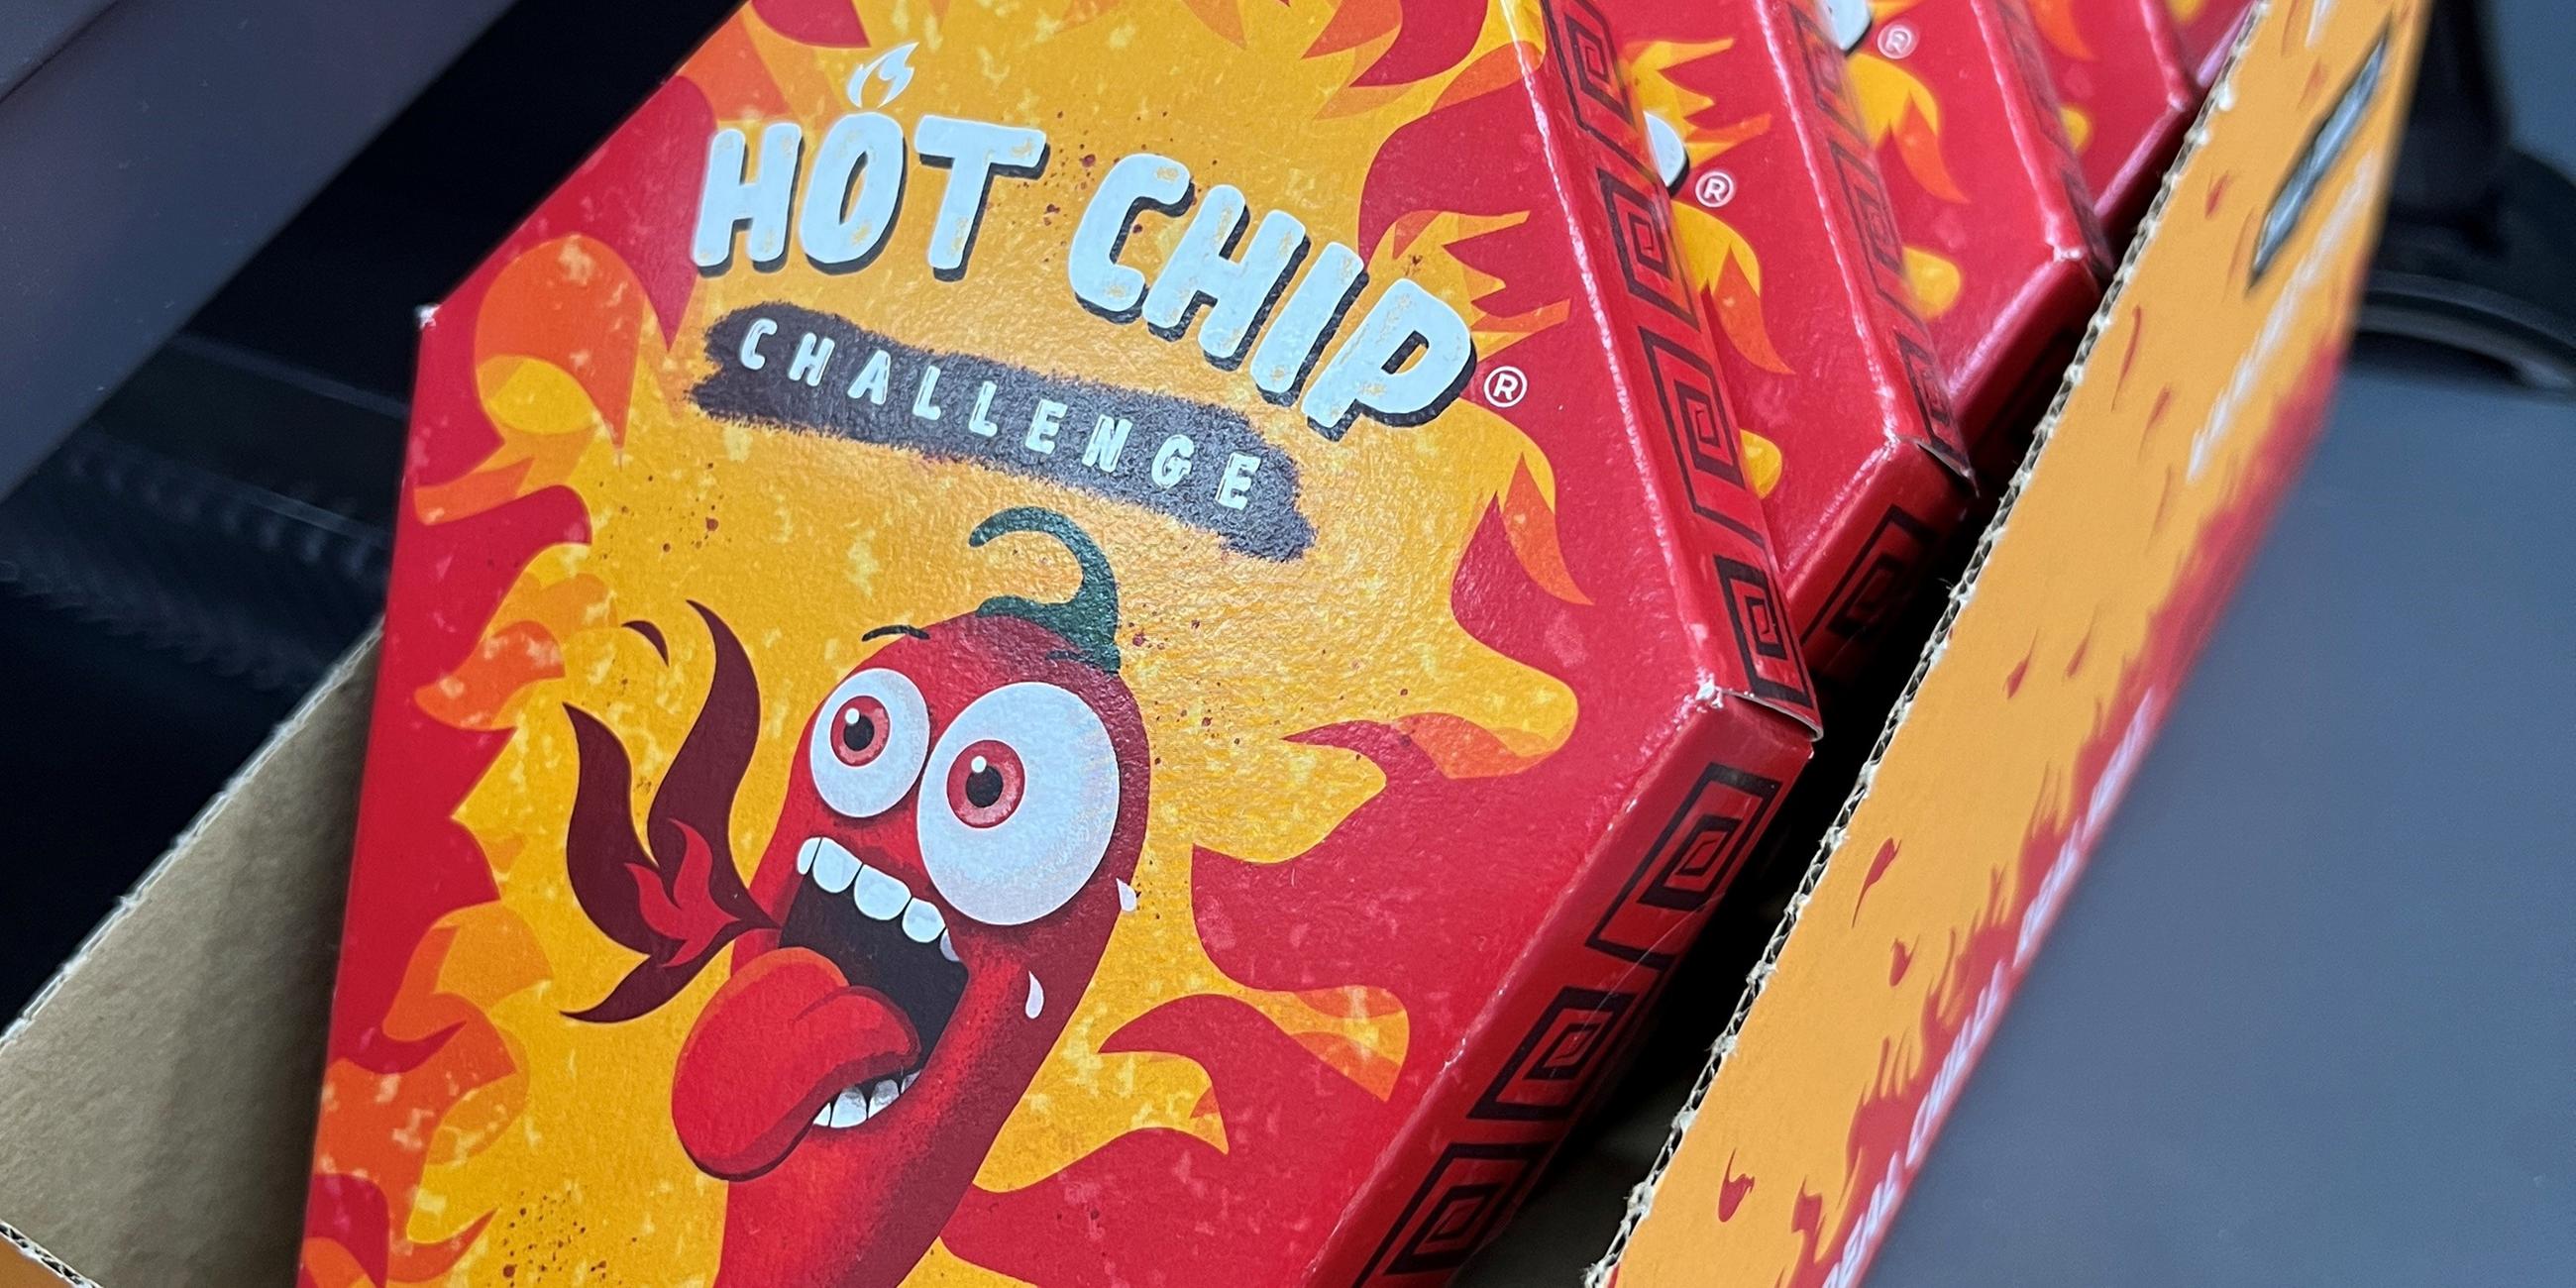 Mehrerer Packungen der "Hot Chip Challenge" liegen bei einem Kiosk neben der Kasse. 